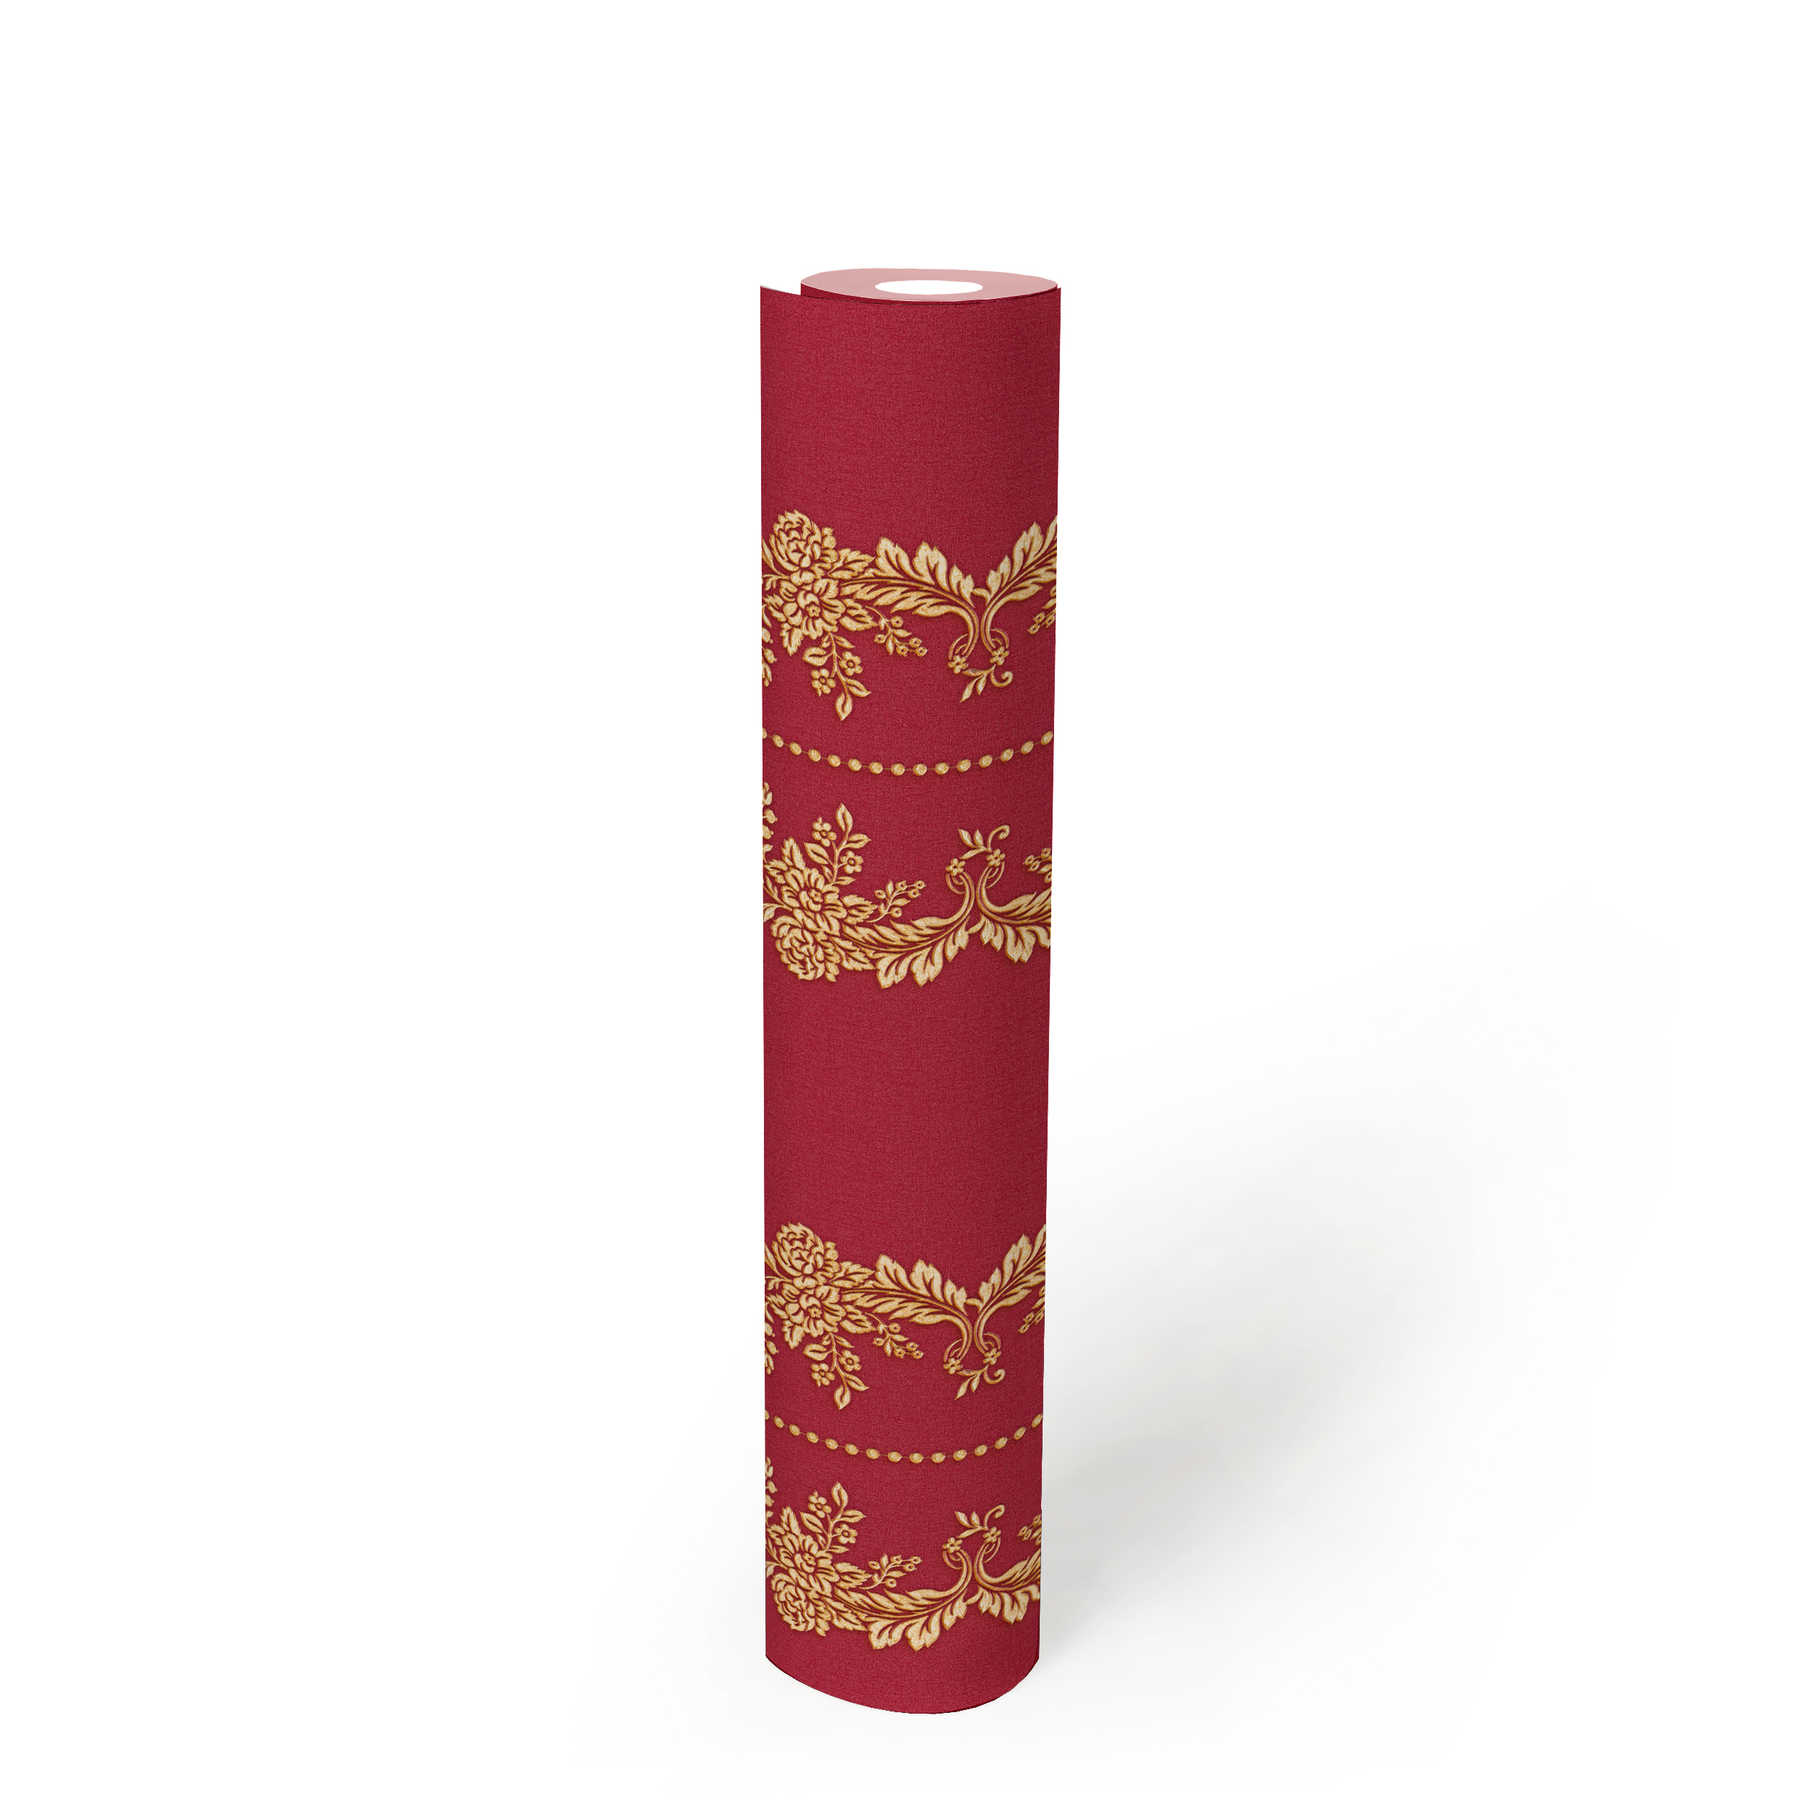             Papel pintado ornamental clásico con efecto dorado - metálico, rojo
        